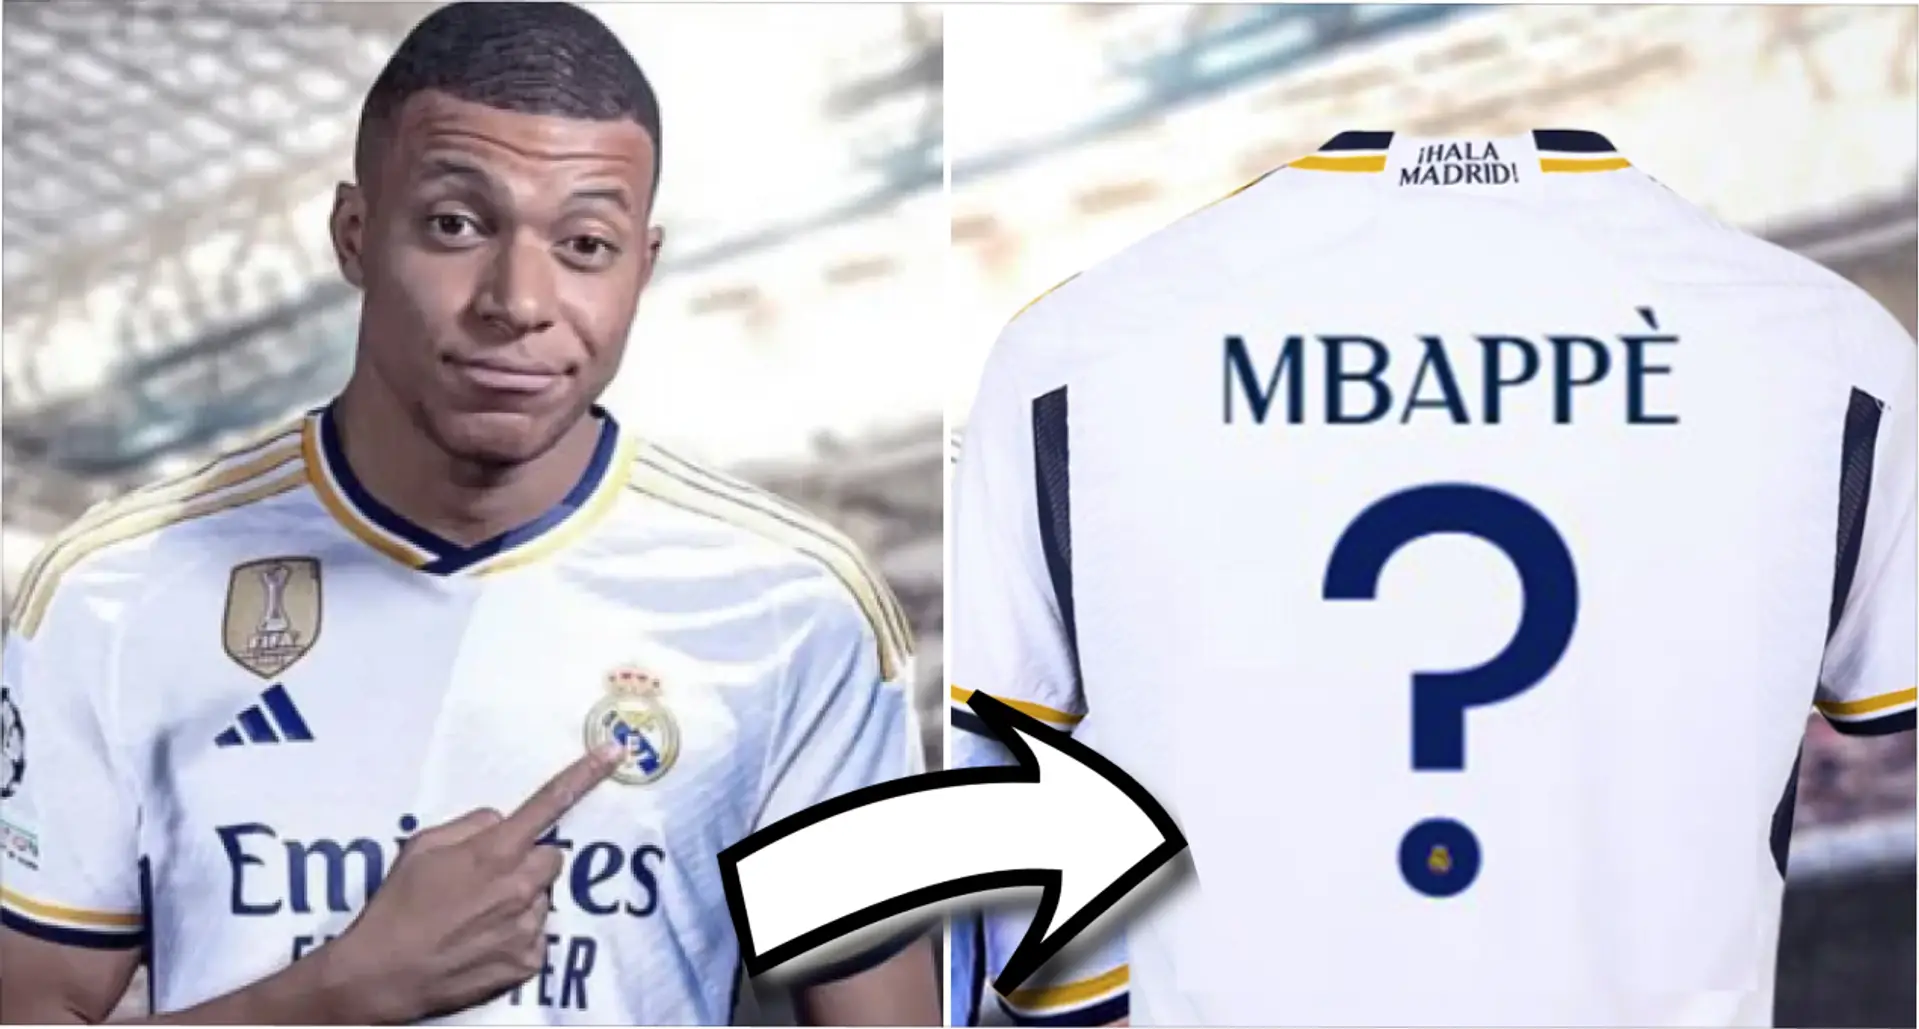 'Compra una camiseta e imprime su nombre': el reportero de la FIFA da las últimas noticias sobre el traspaso de Mbappé al Madrid